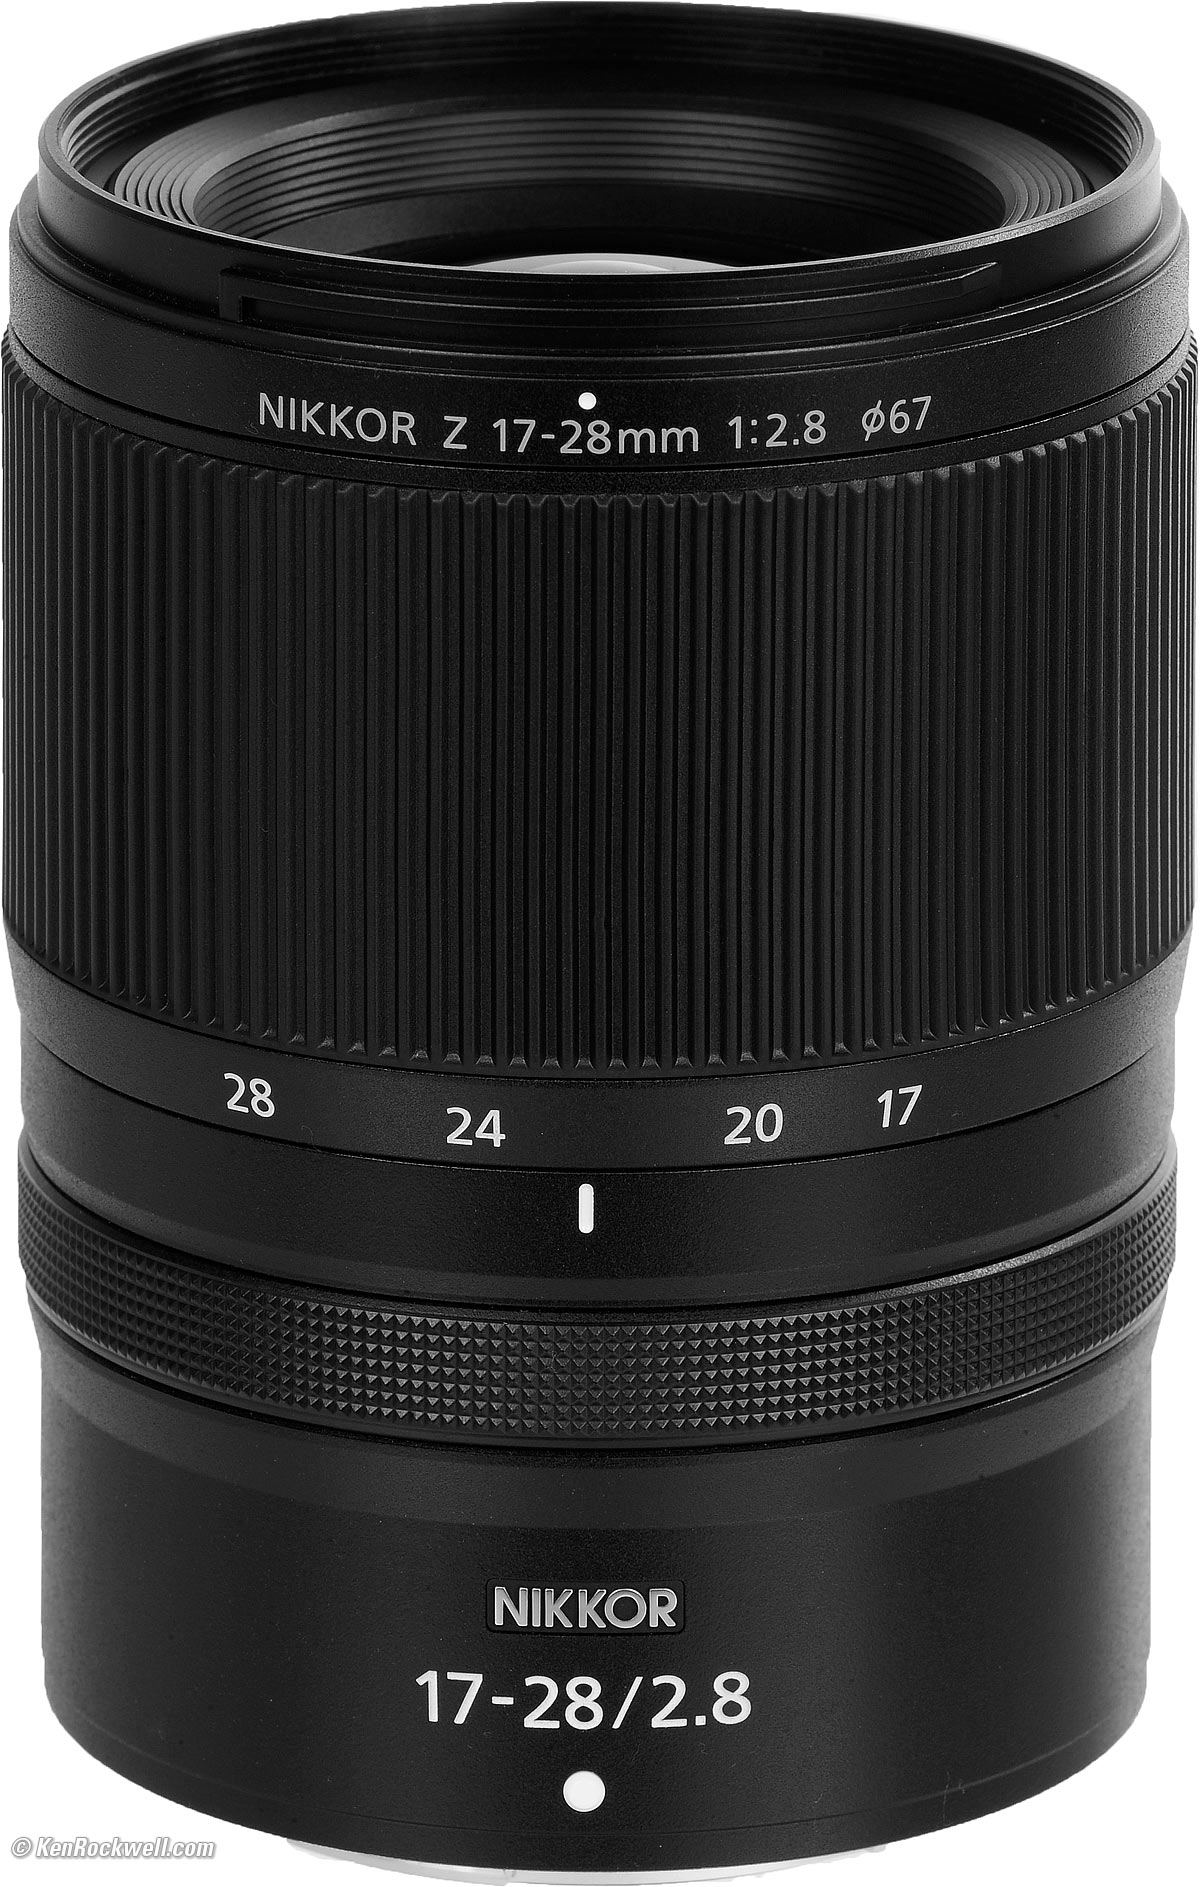 Nikon Z 17-28mm f/2.8 Review